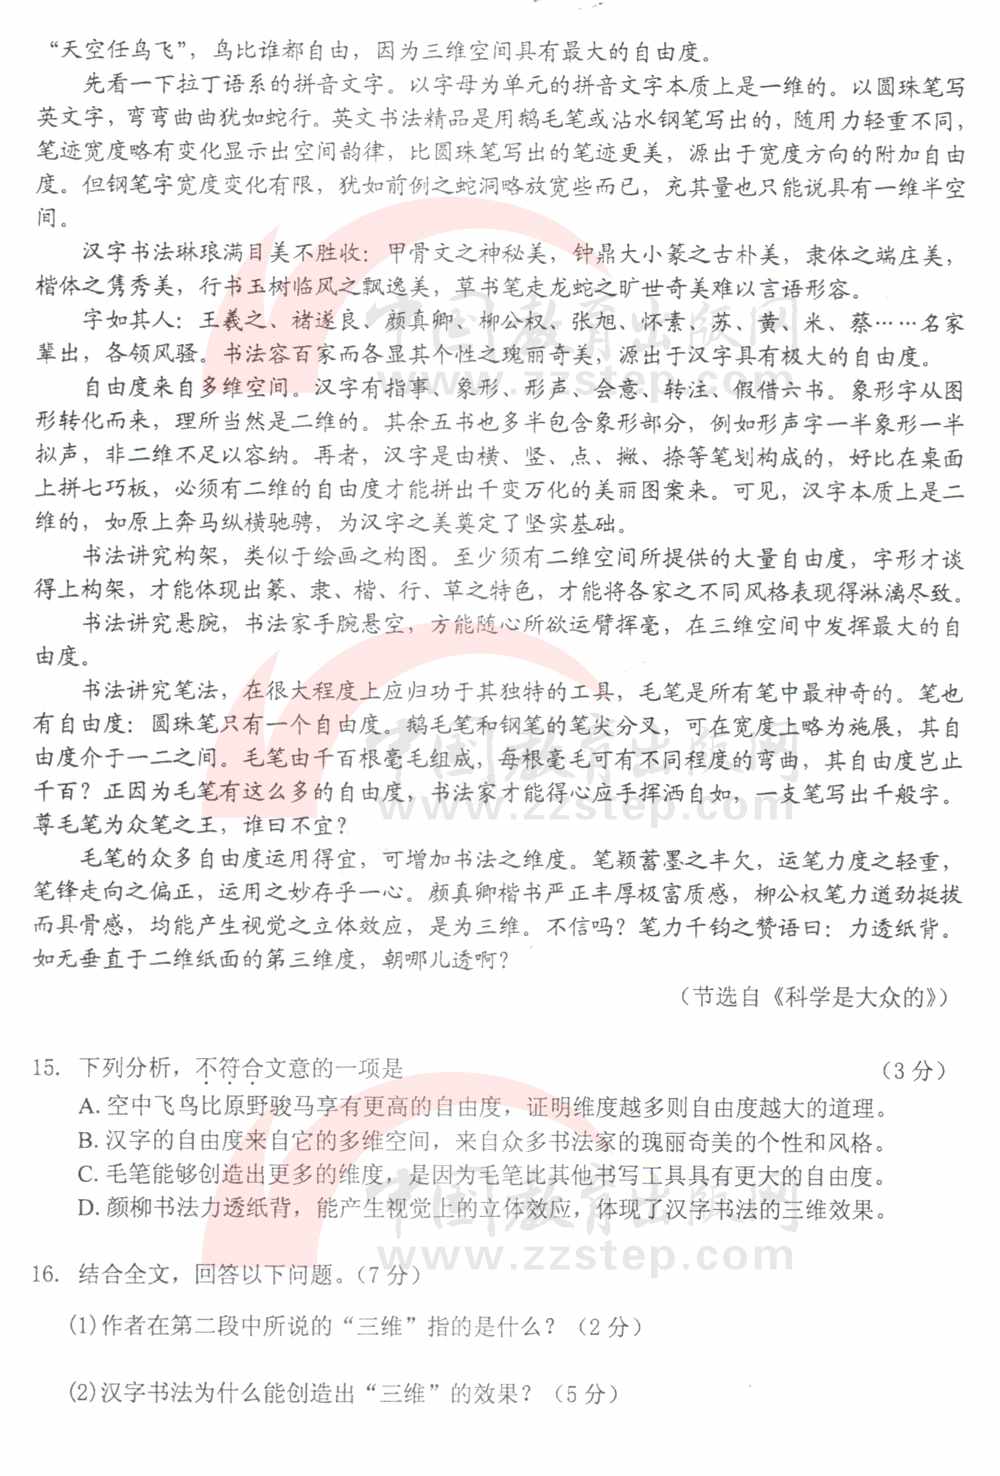 2011年广州市考试中文测试5